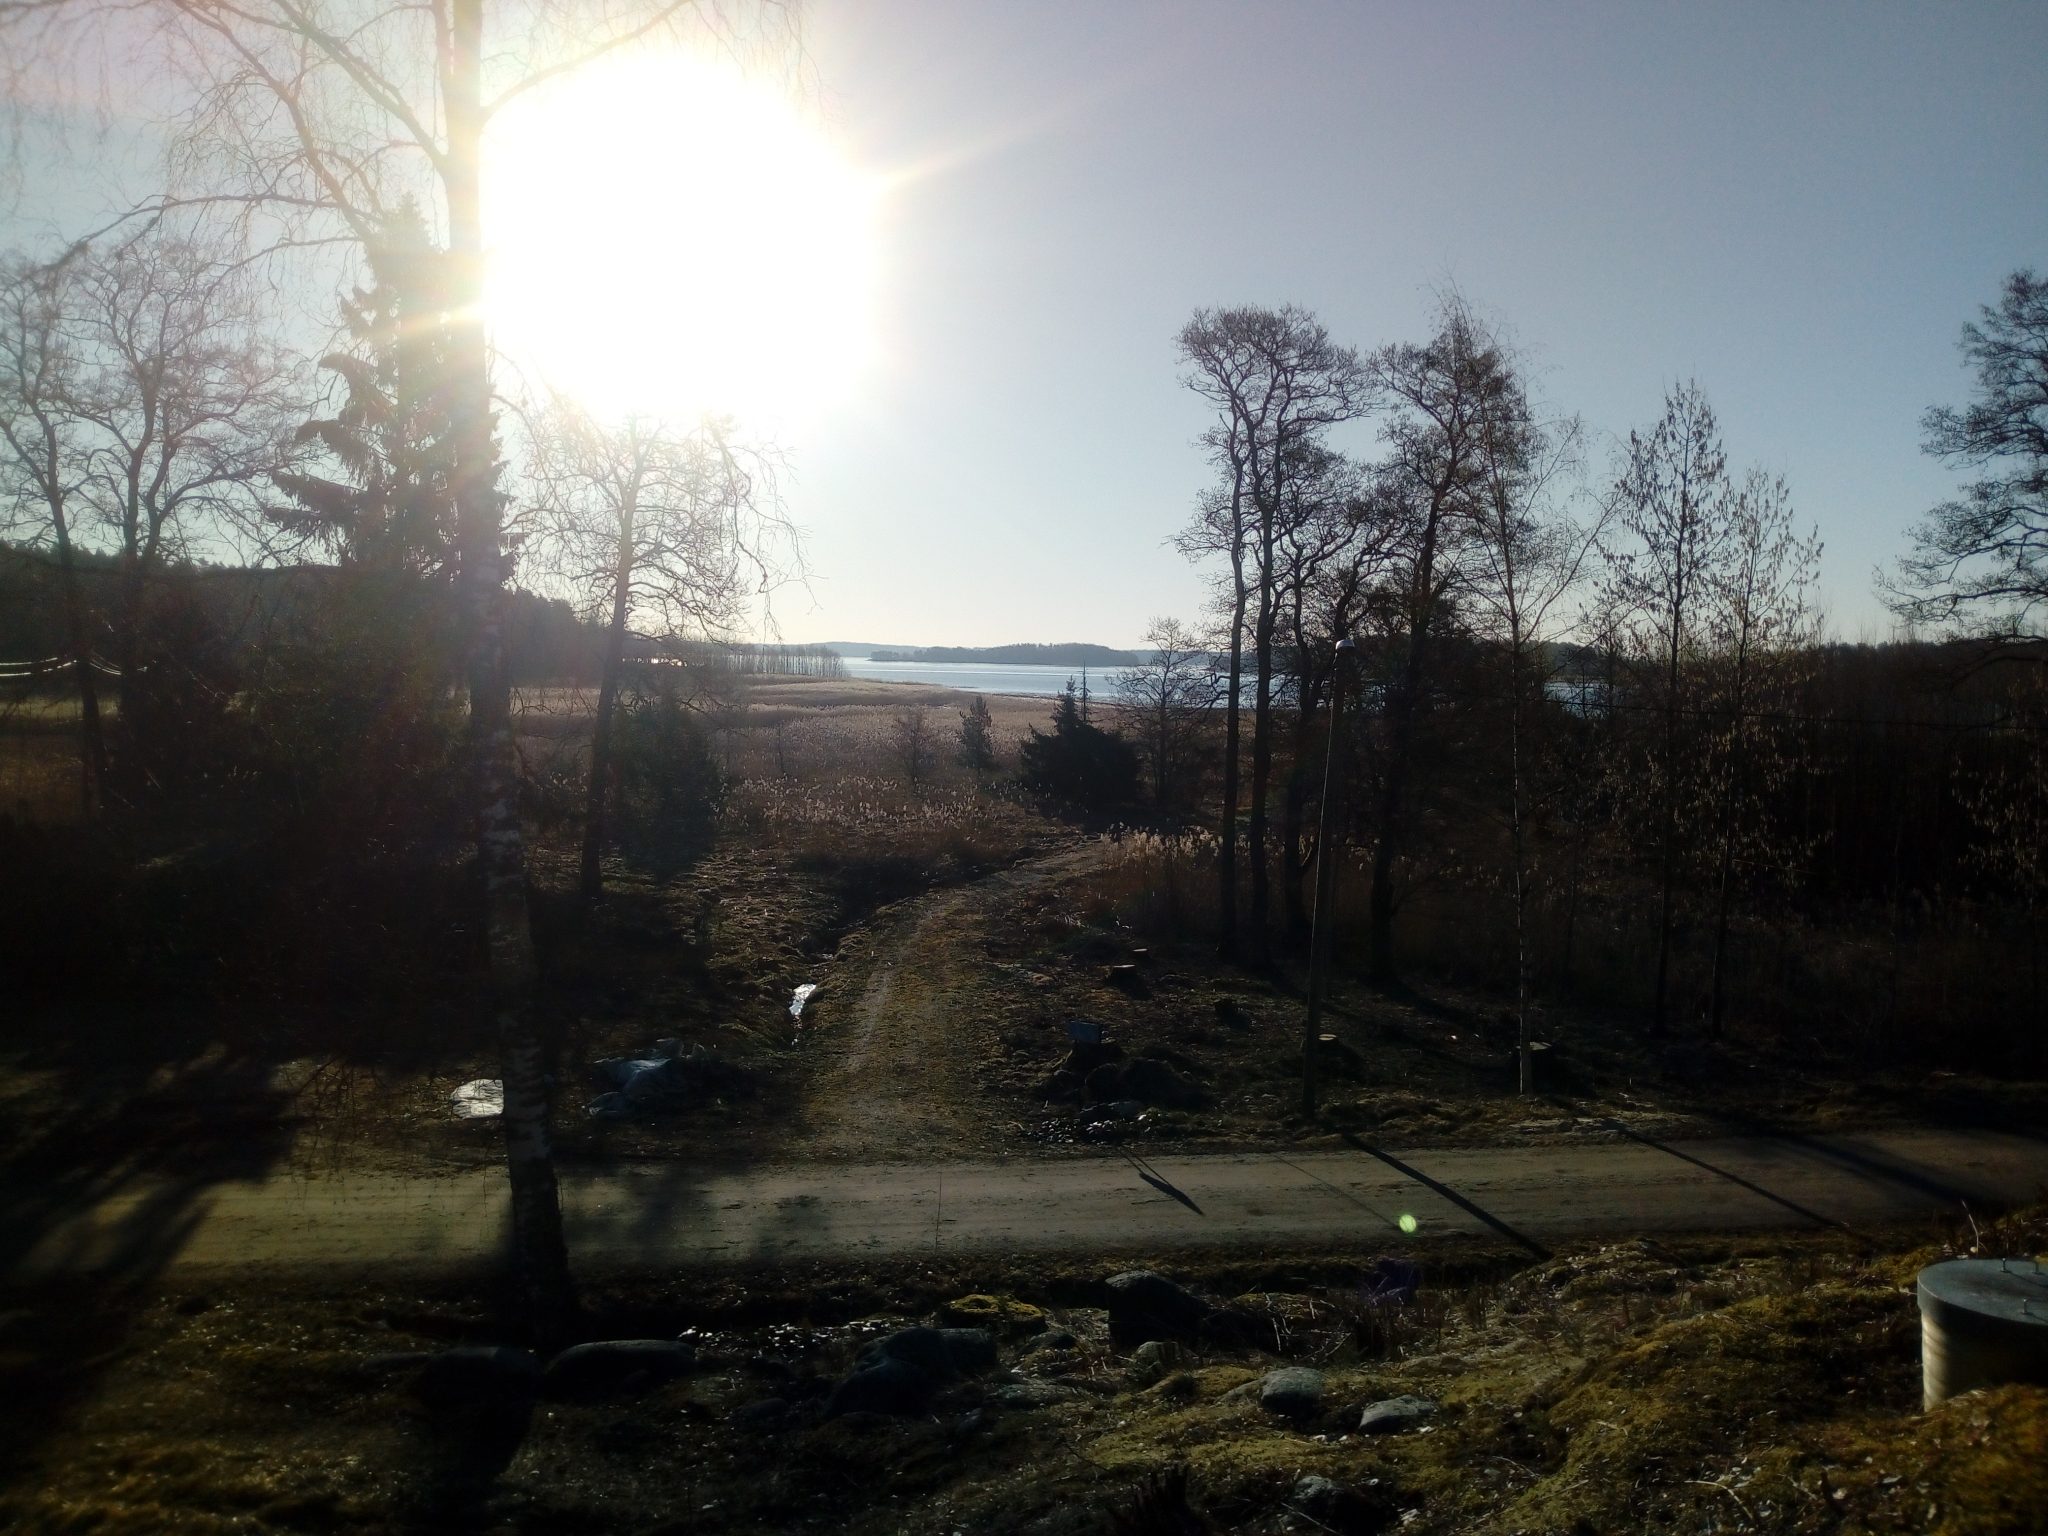 The landscape of Kesäniemi